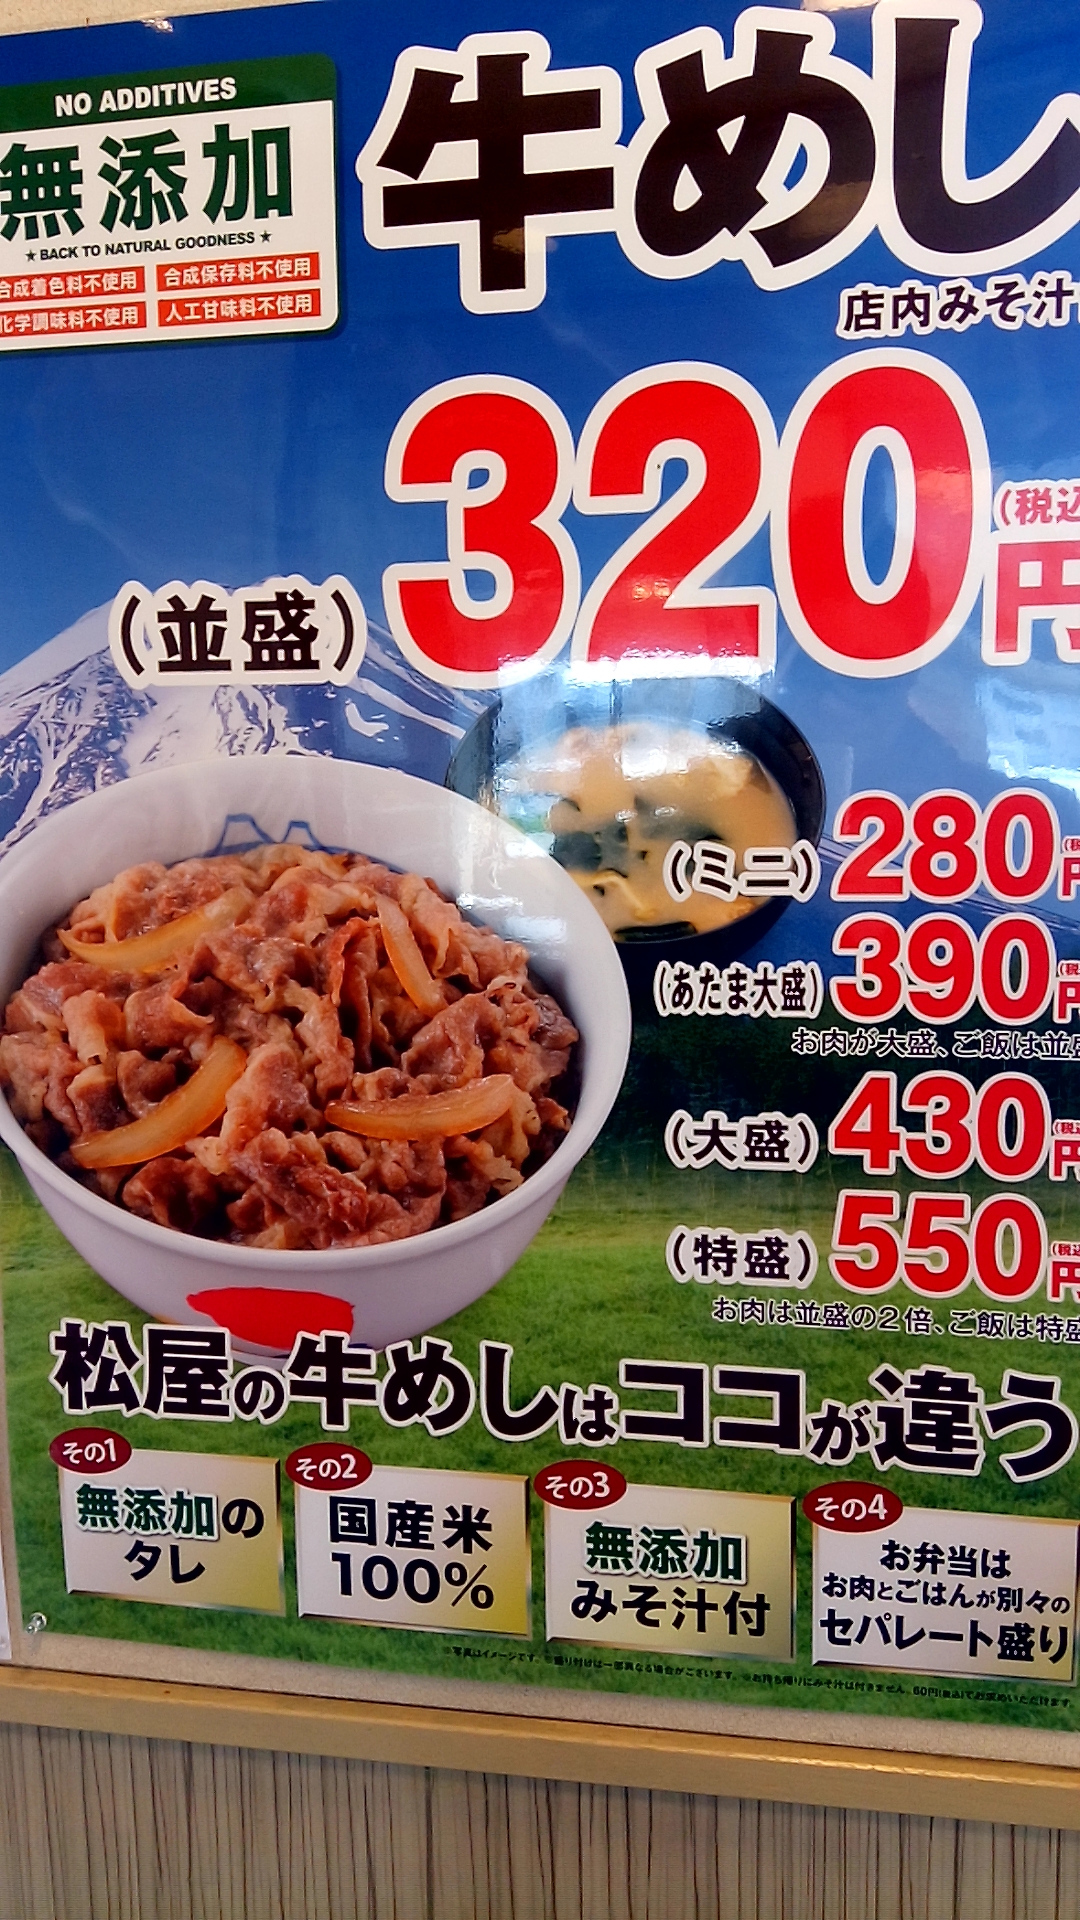 牛丼が大好きだ 松屋の牛丼は味噌汁つきで3円 券売機のおかげだ